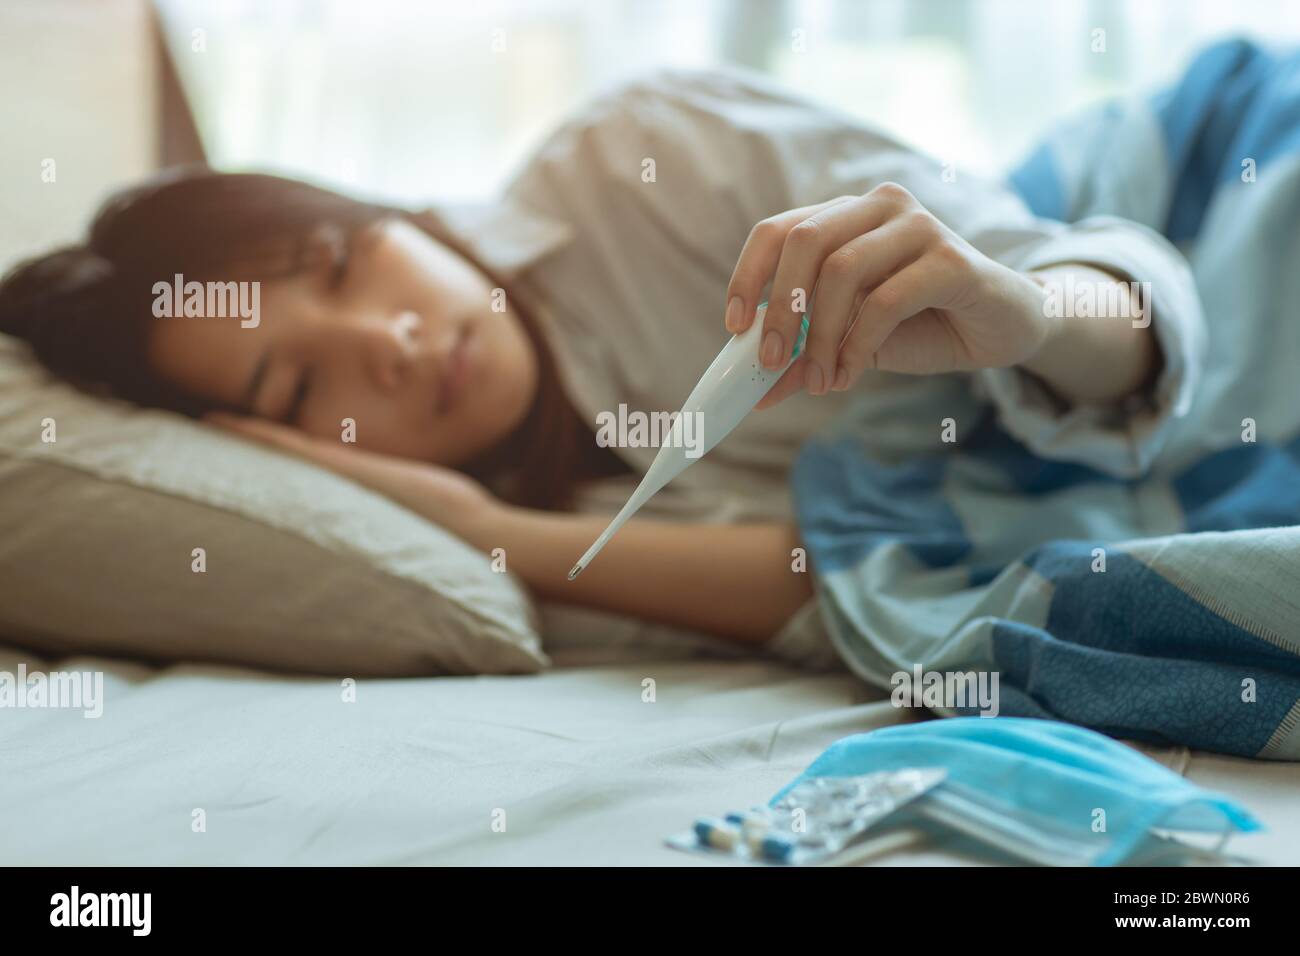 Teen asiatico infettato con influenza Covid-19 malato sdraiato a letto a causa di una pandemia del virus Corona, ansiosamente misurando la temperatura corporea con il calore digitale Foto Stock